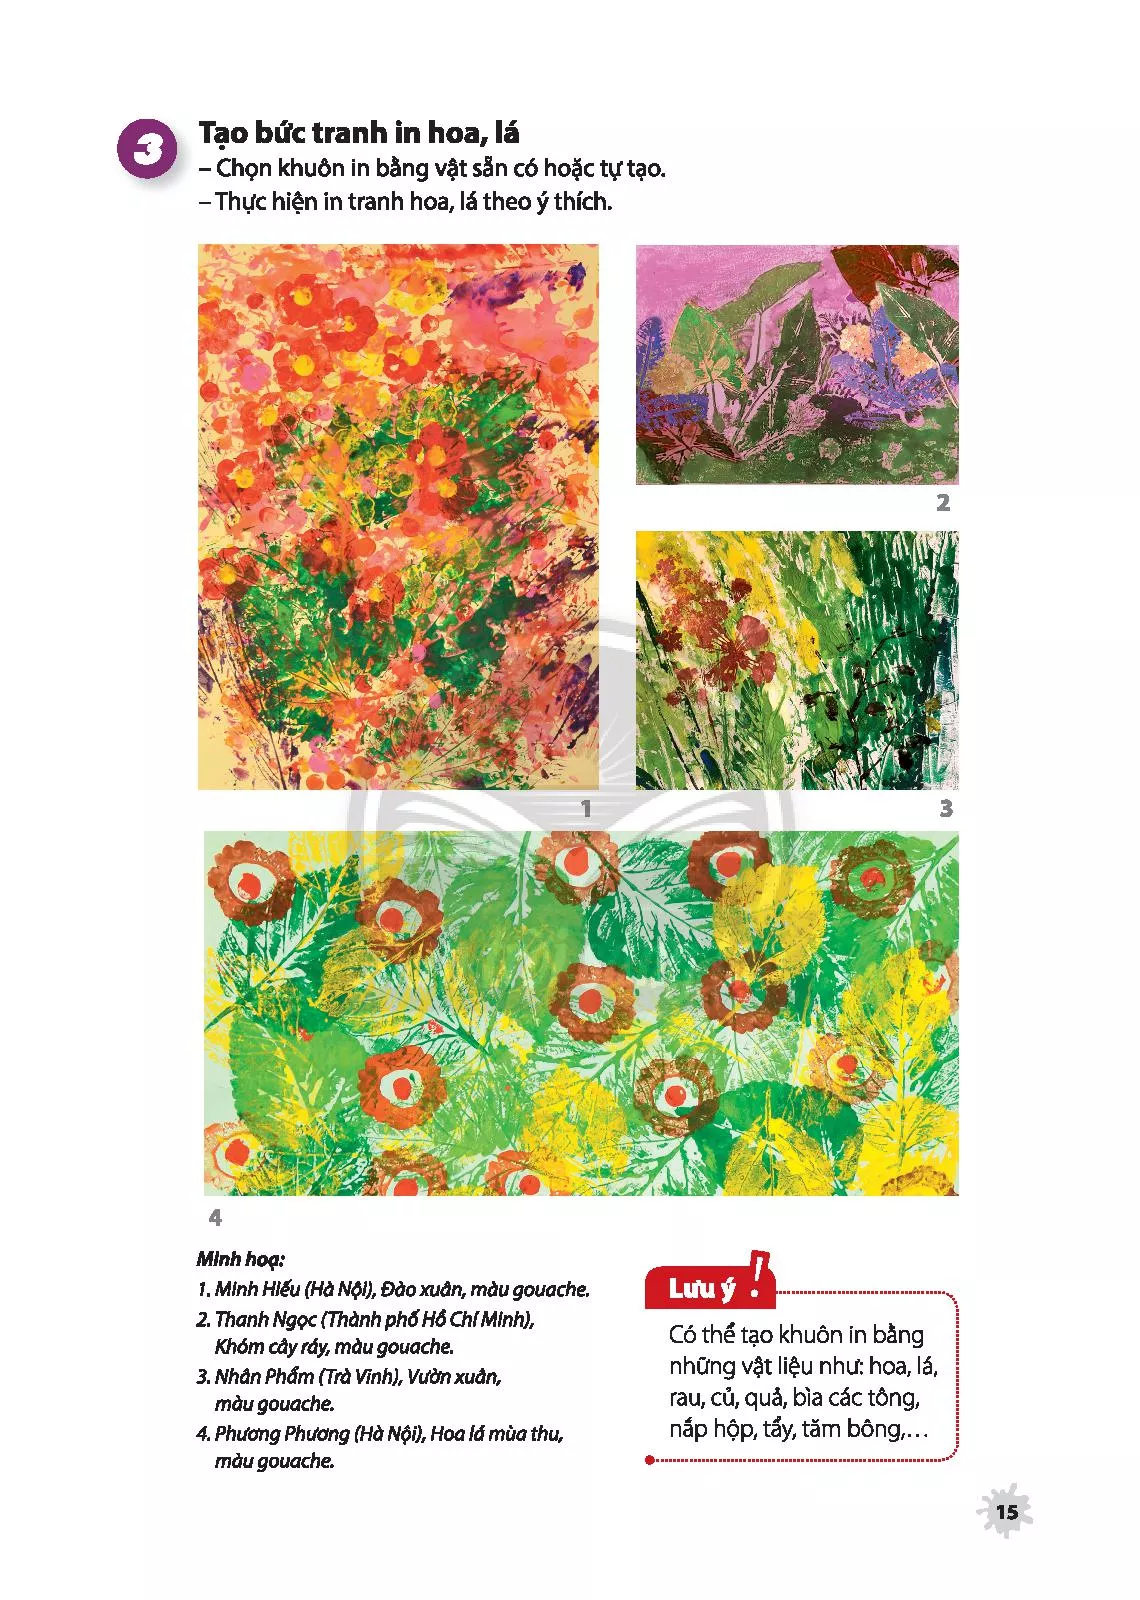 Tranh in hoa lá lớp 6 được thiết kế với đầy đủ sự cân nhắc để học sinh có thể học hỏi và phát triển kỹ năng vẽ. Hãy trải nghiệm bộ sưu tập tranh in hoa lá đẹp và ngưỡng mộ sự sáng tạo của học sinh lớp